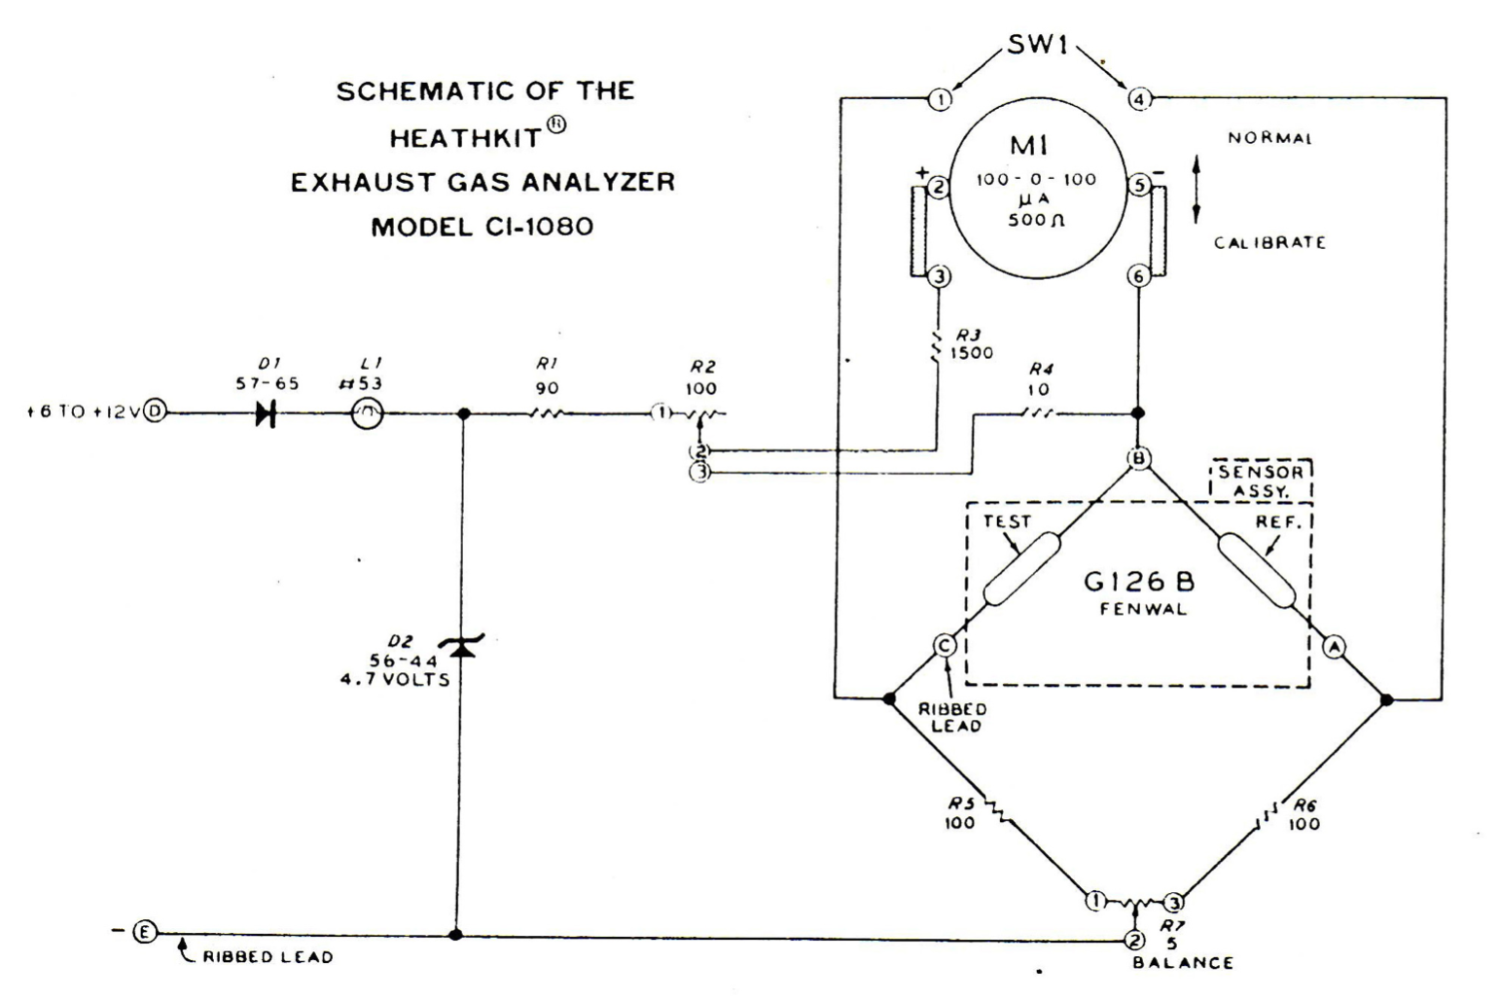 Heathkit CI-1080 Exhaust Gas Analyser - Schematic Diagrams